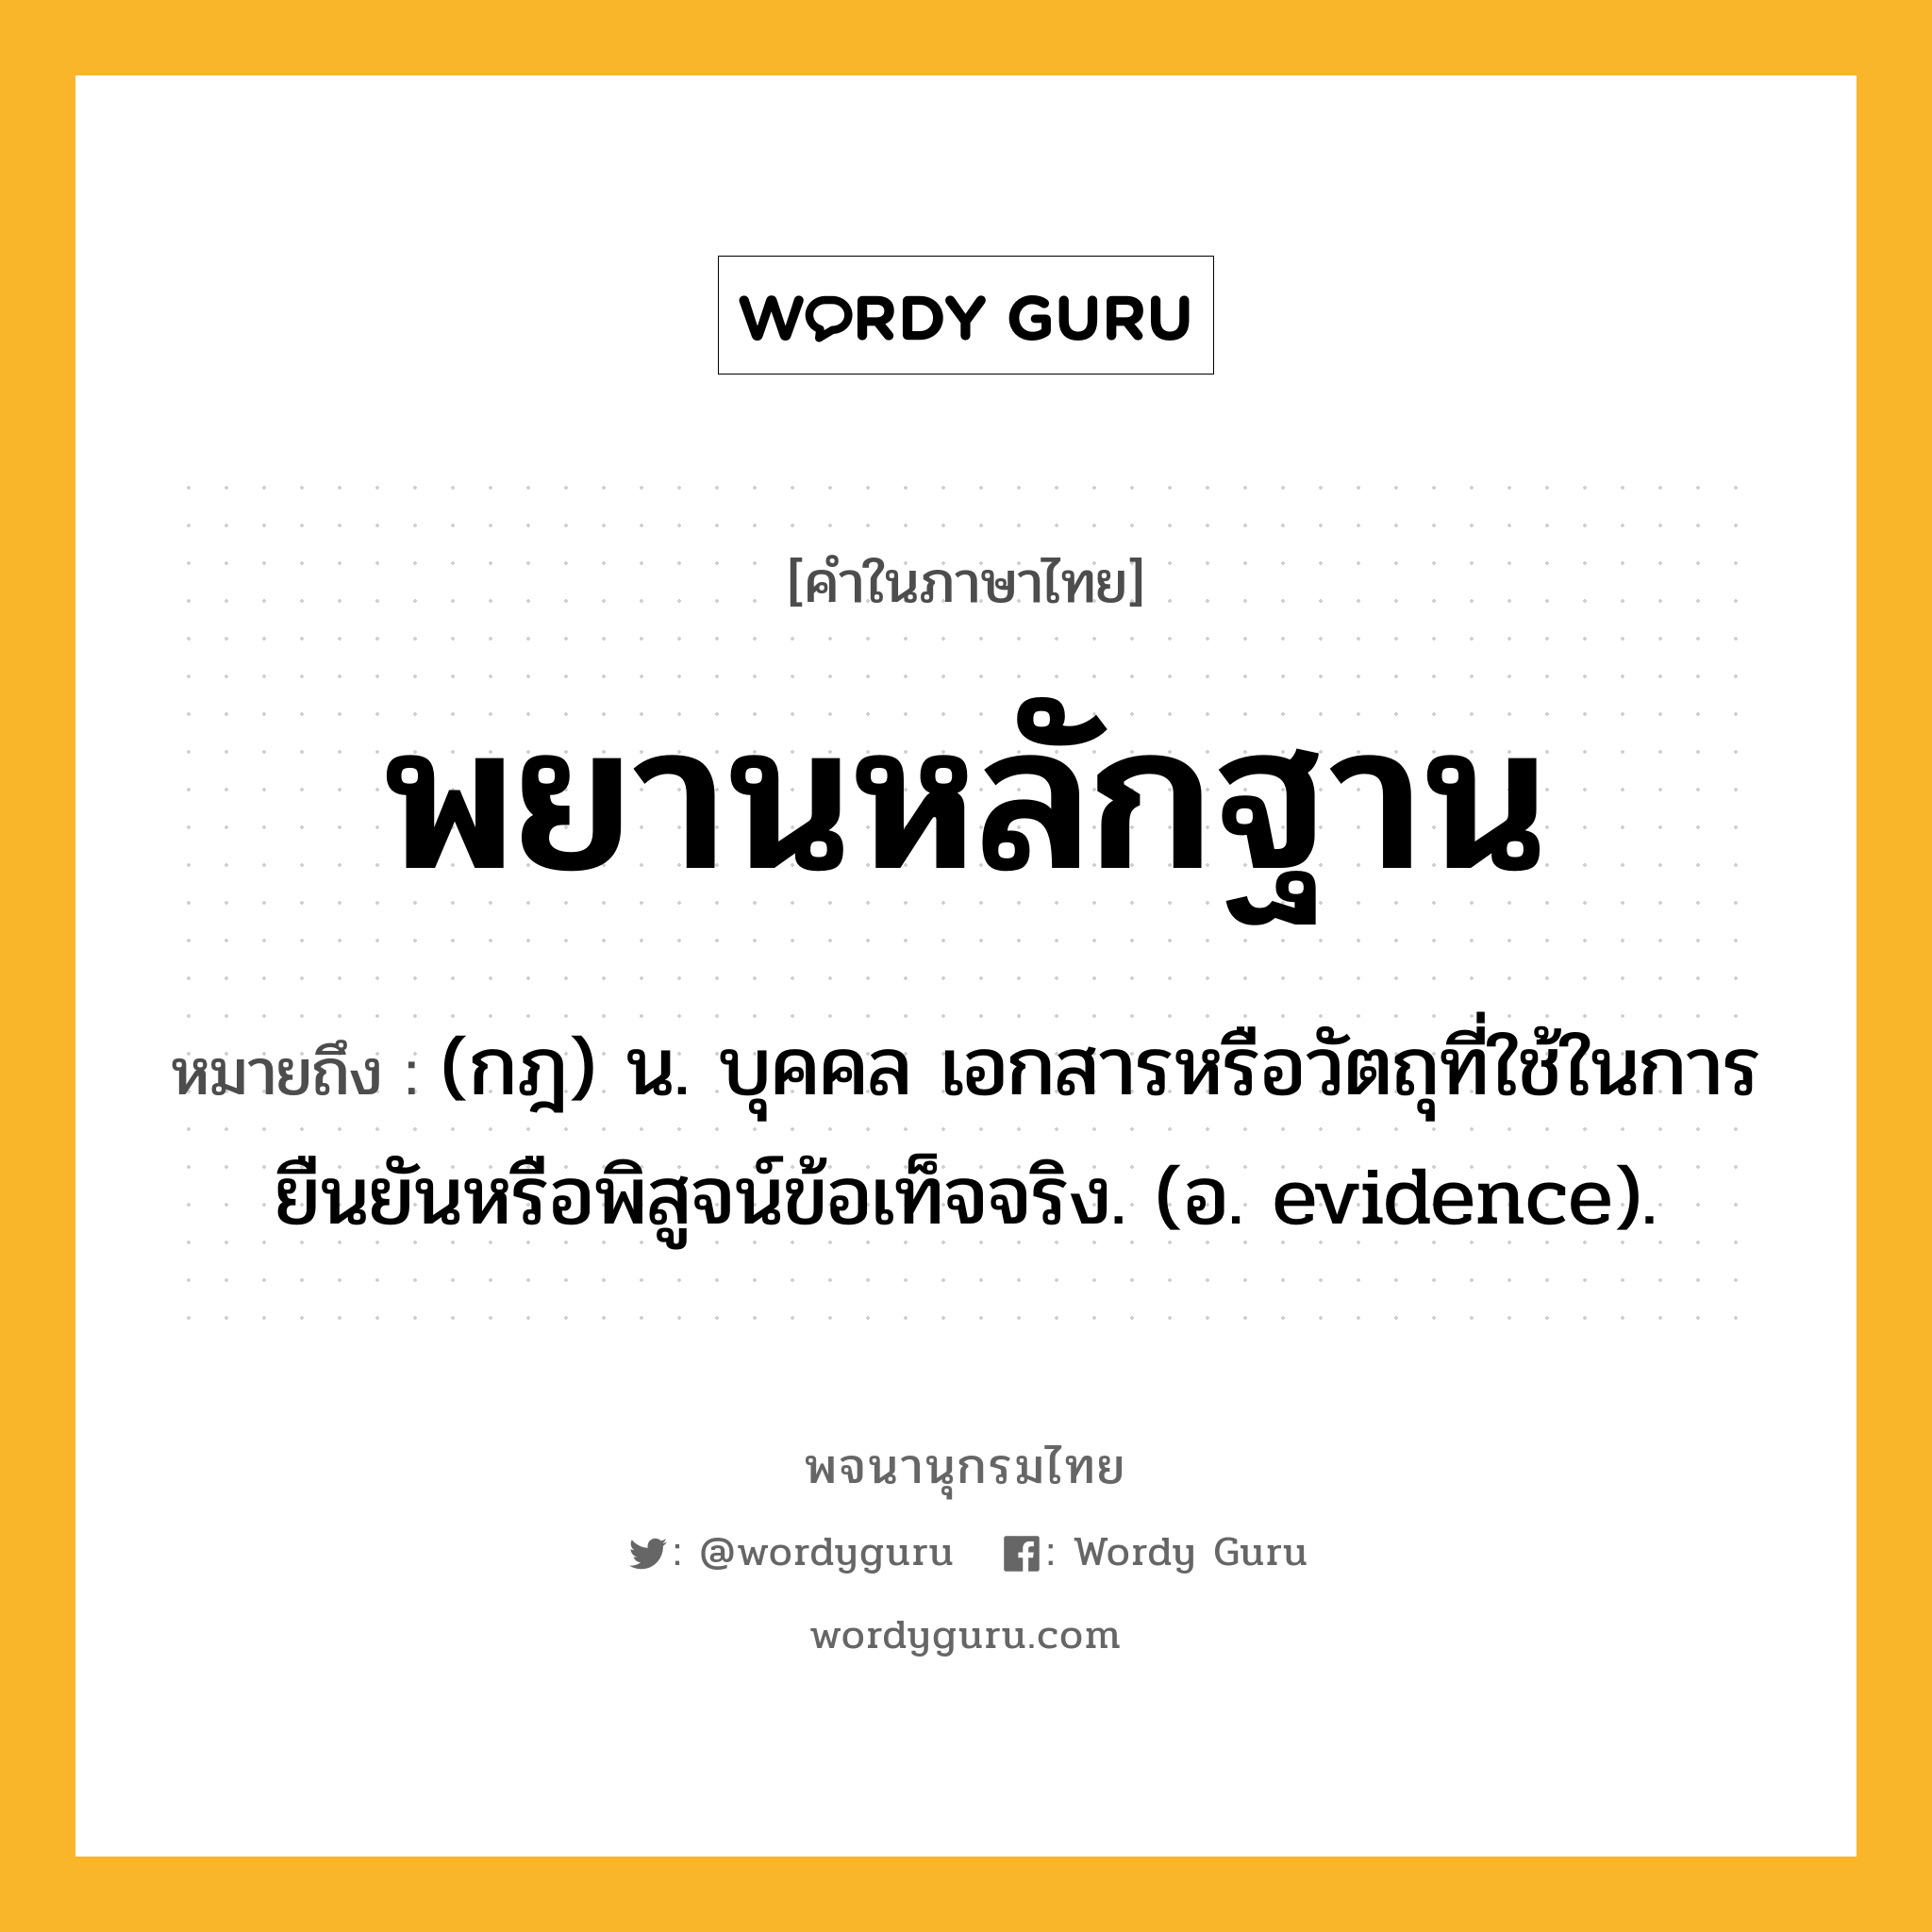 พยานหลักฐาน หมายถึงอะไร?, คำในภาษาไทย พยานหลักฐาน หมายถึง (กฎ) น. บุคคล เอกสารหรือวัตถุที่ใช้ในการยืนยันหรือพิสูจน์ข้อเท็จจริง. (อ. evidence).